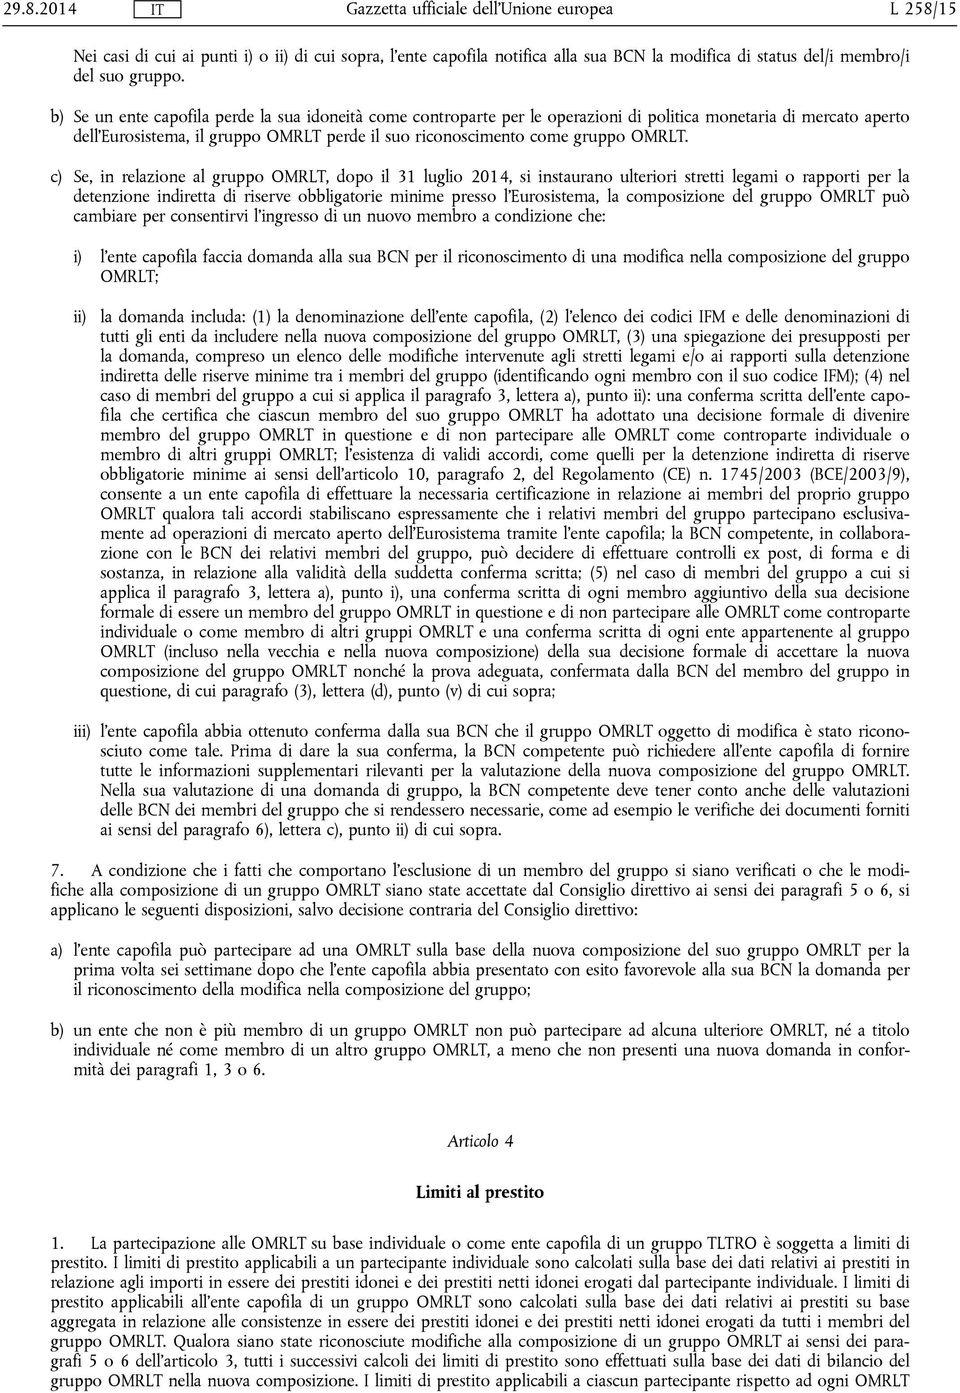 c) Se, in relazione al gruppo OMRLT, dopo il 31 luglio 2014, si instaurano ulteriori stretti legami o rapporti per la detenzione indiretta di riserve obbligatorie minime presso l'eurosistema, la